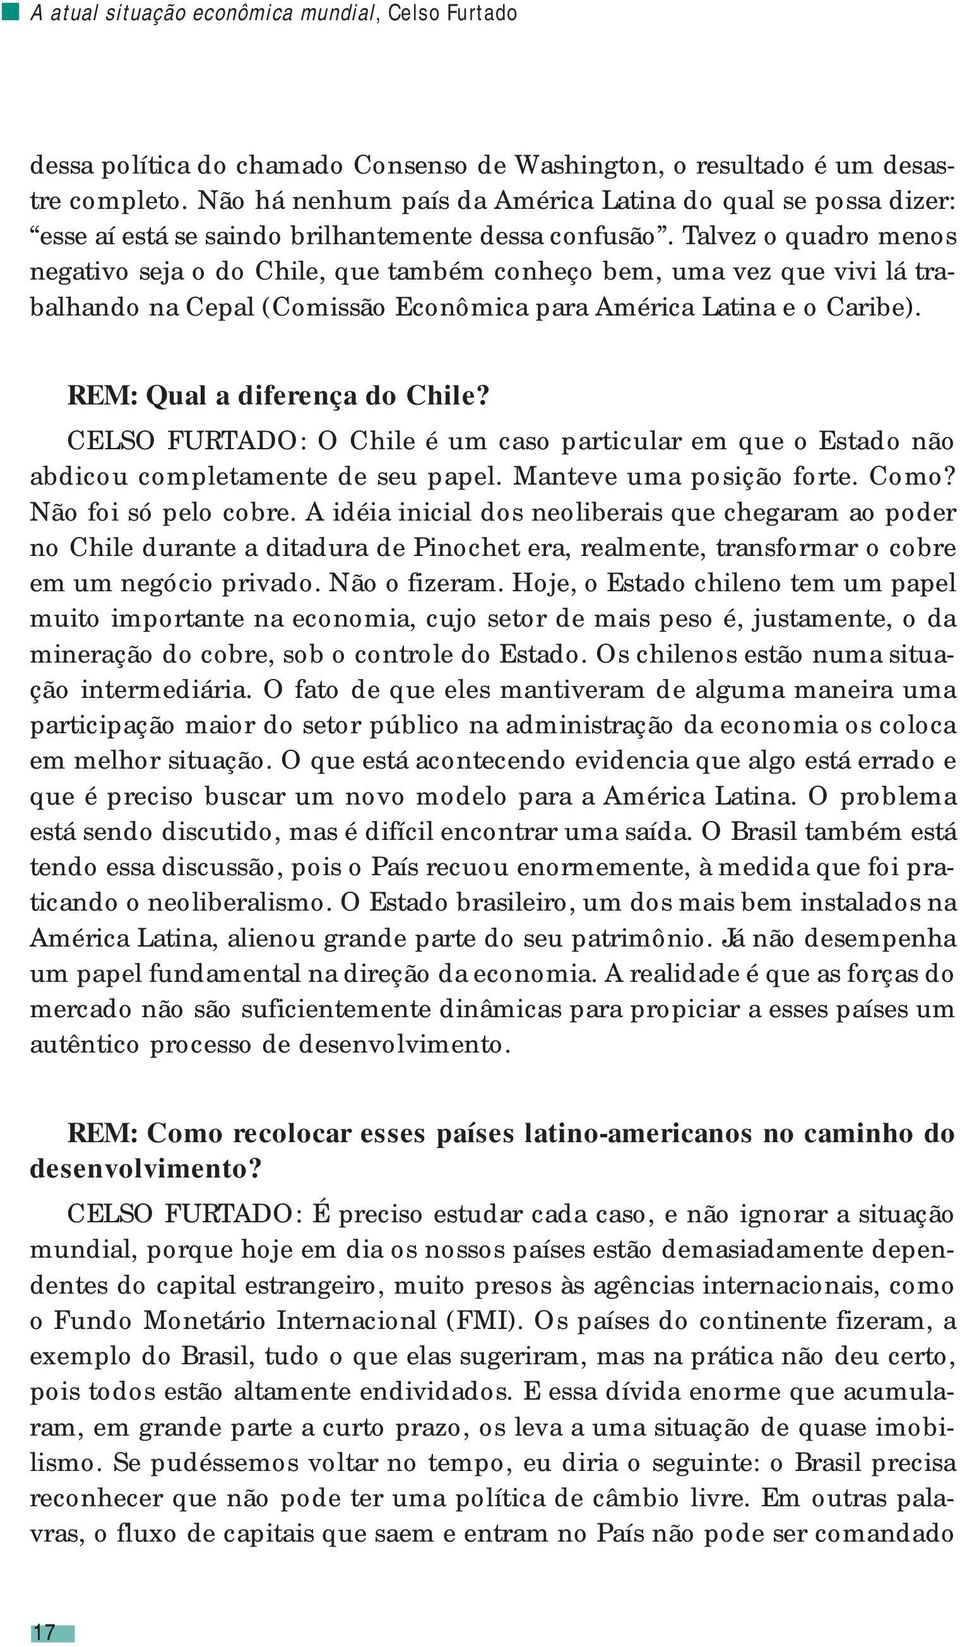 Talvez o quadro menos negativo seja o do Chile, que também conheço bem, uma vez que vivi lá trabalhando na Cepal (Comissão Econômica para América Latina e o Caribe). REM: Qual a diferença do Chile?